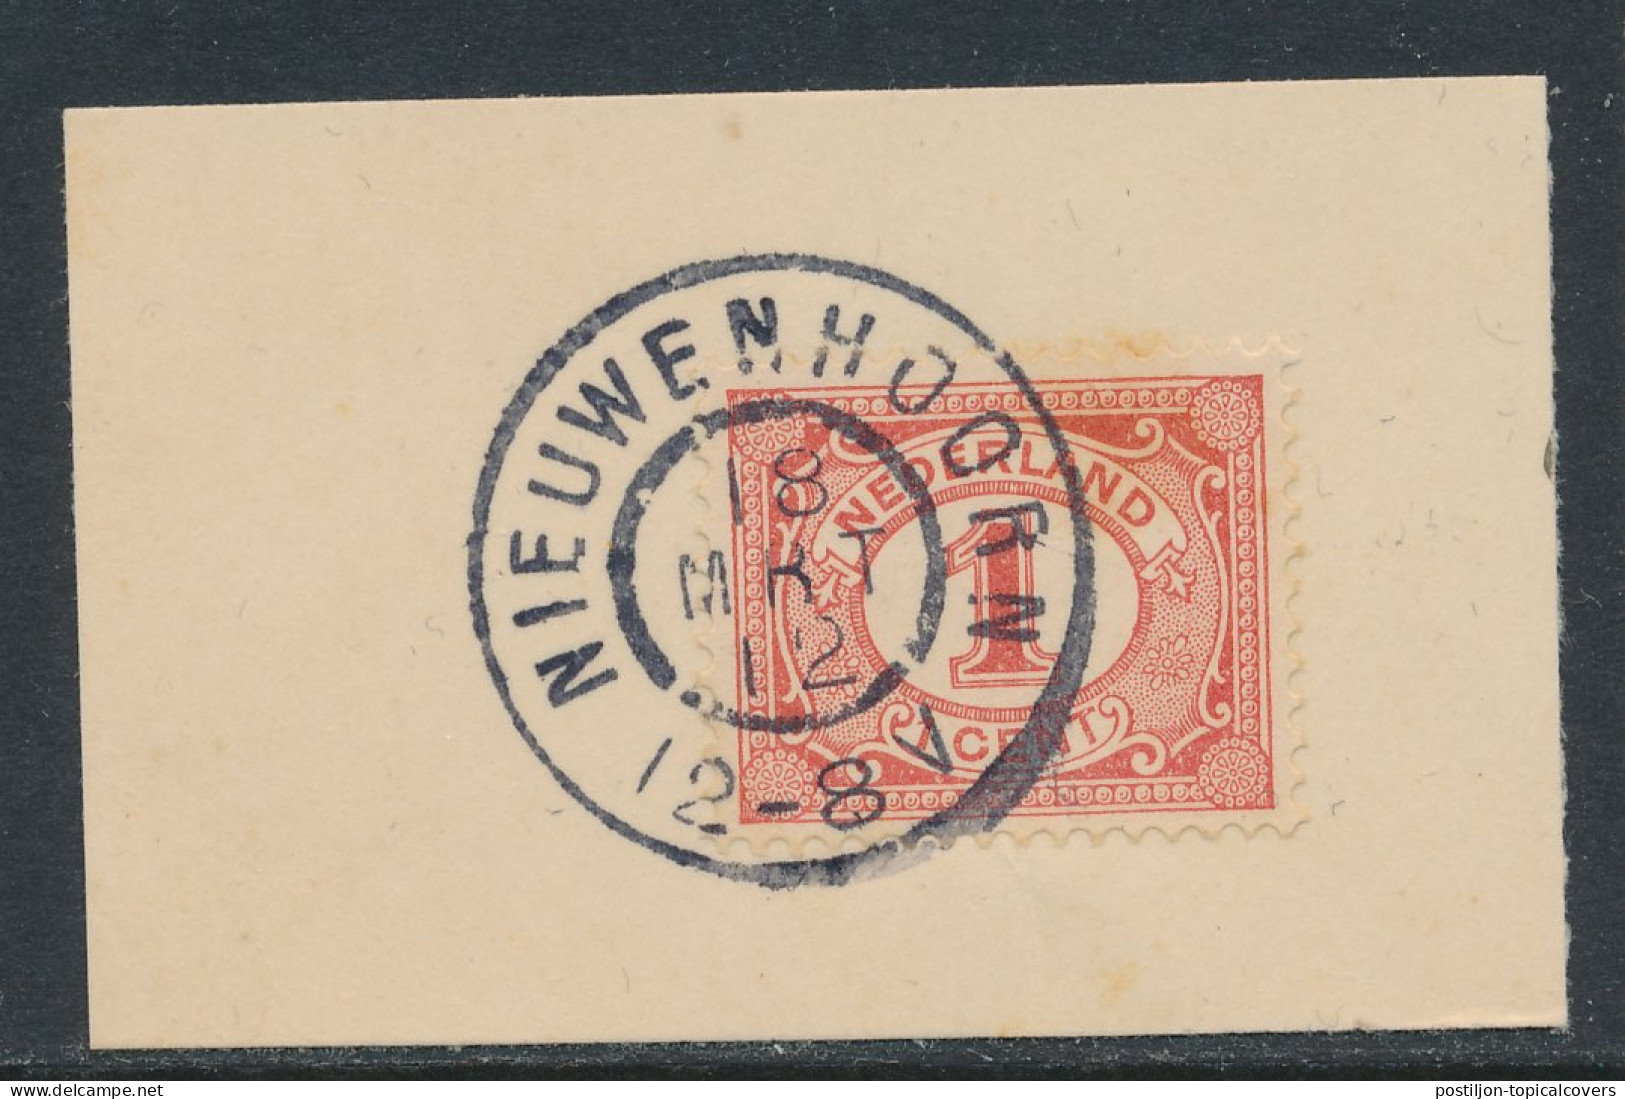 Grootrondstempel Nieuwenhoorn 1912 - Poststempels/ Marcofilie